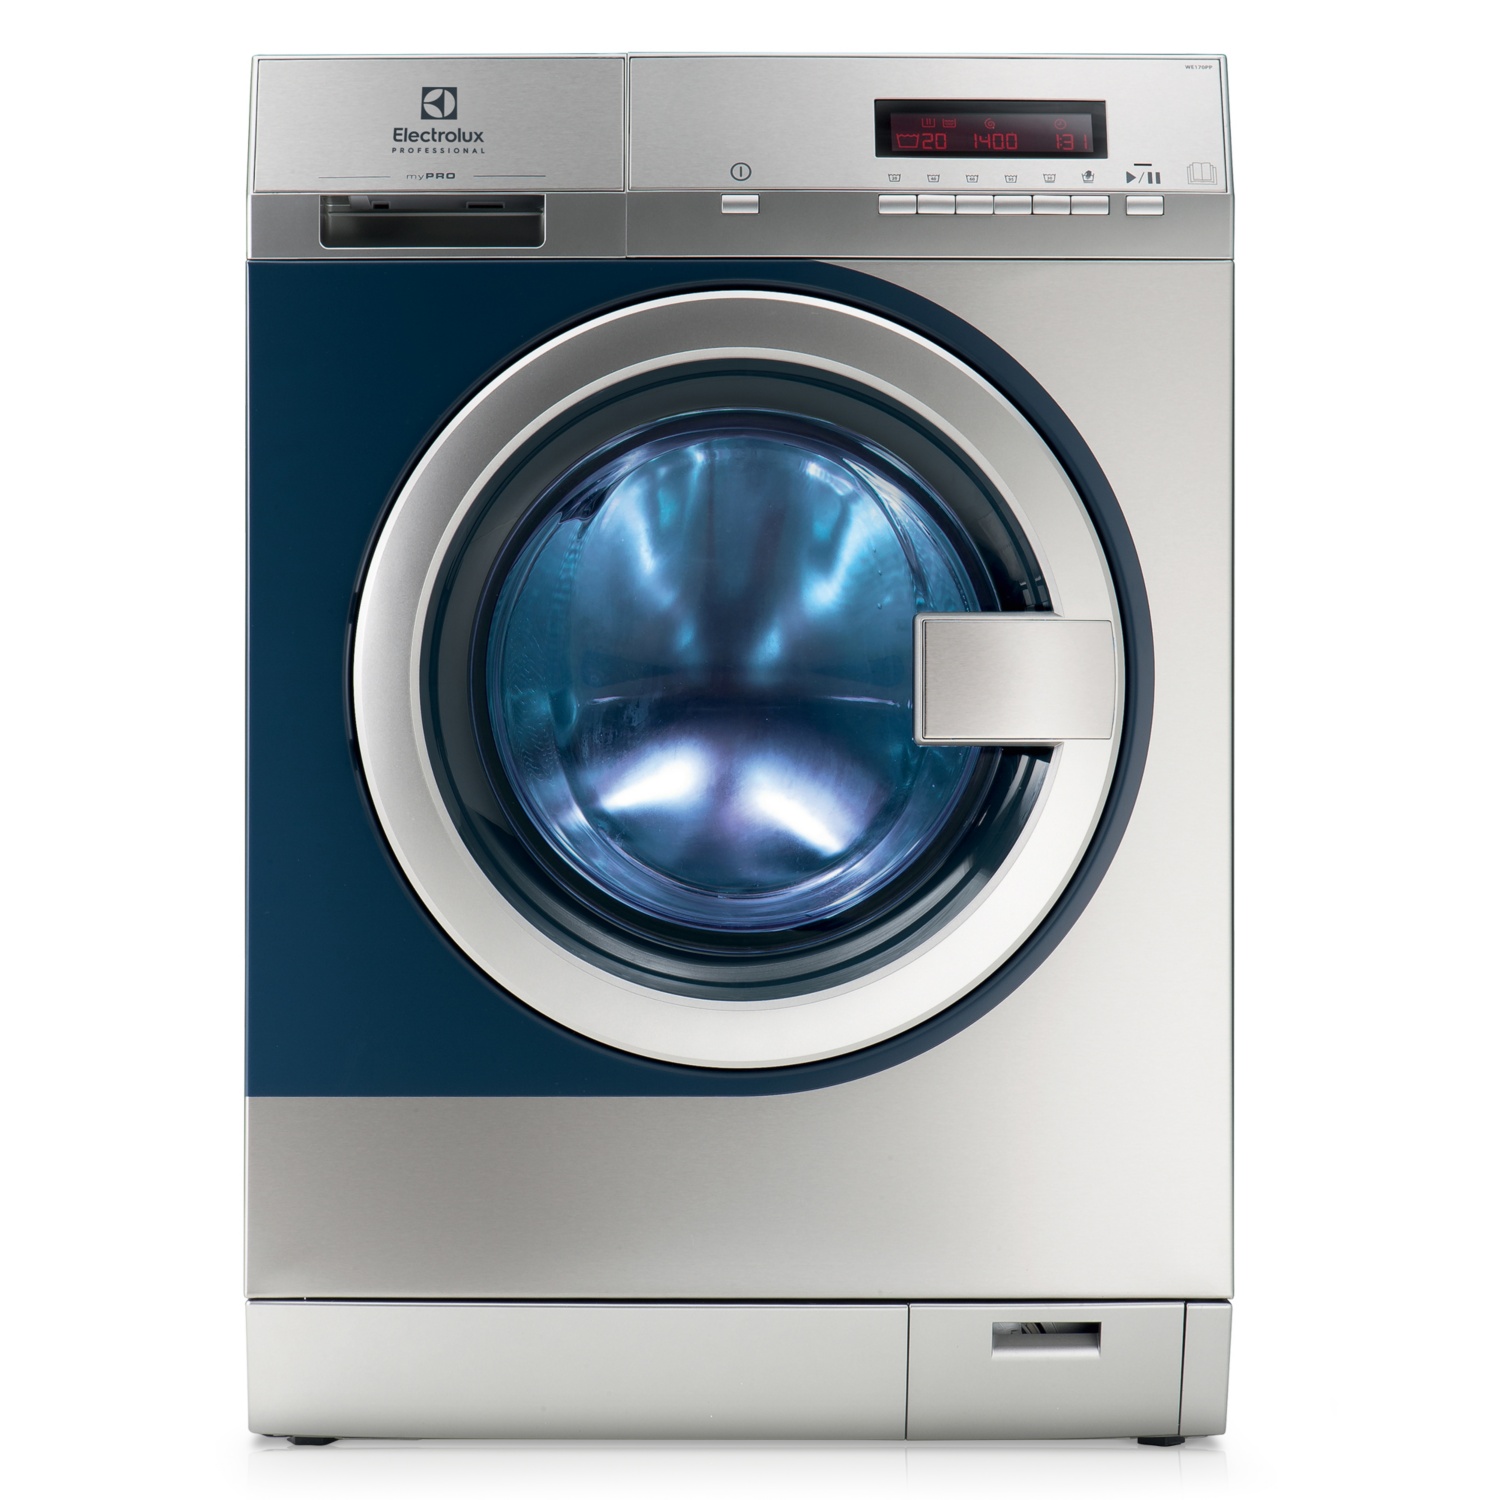 ELECTROLUX PROFESSIONAL myPRO smartprofessionelle Waschmaschine WE170P